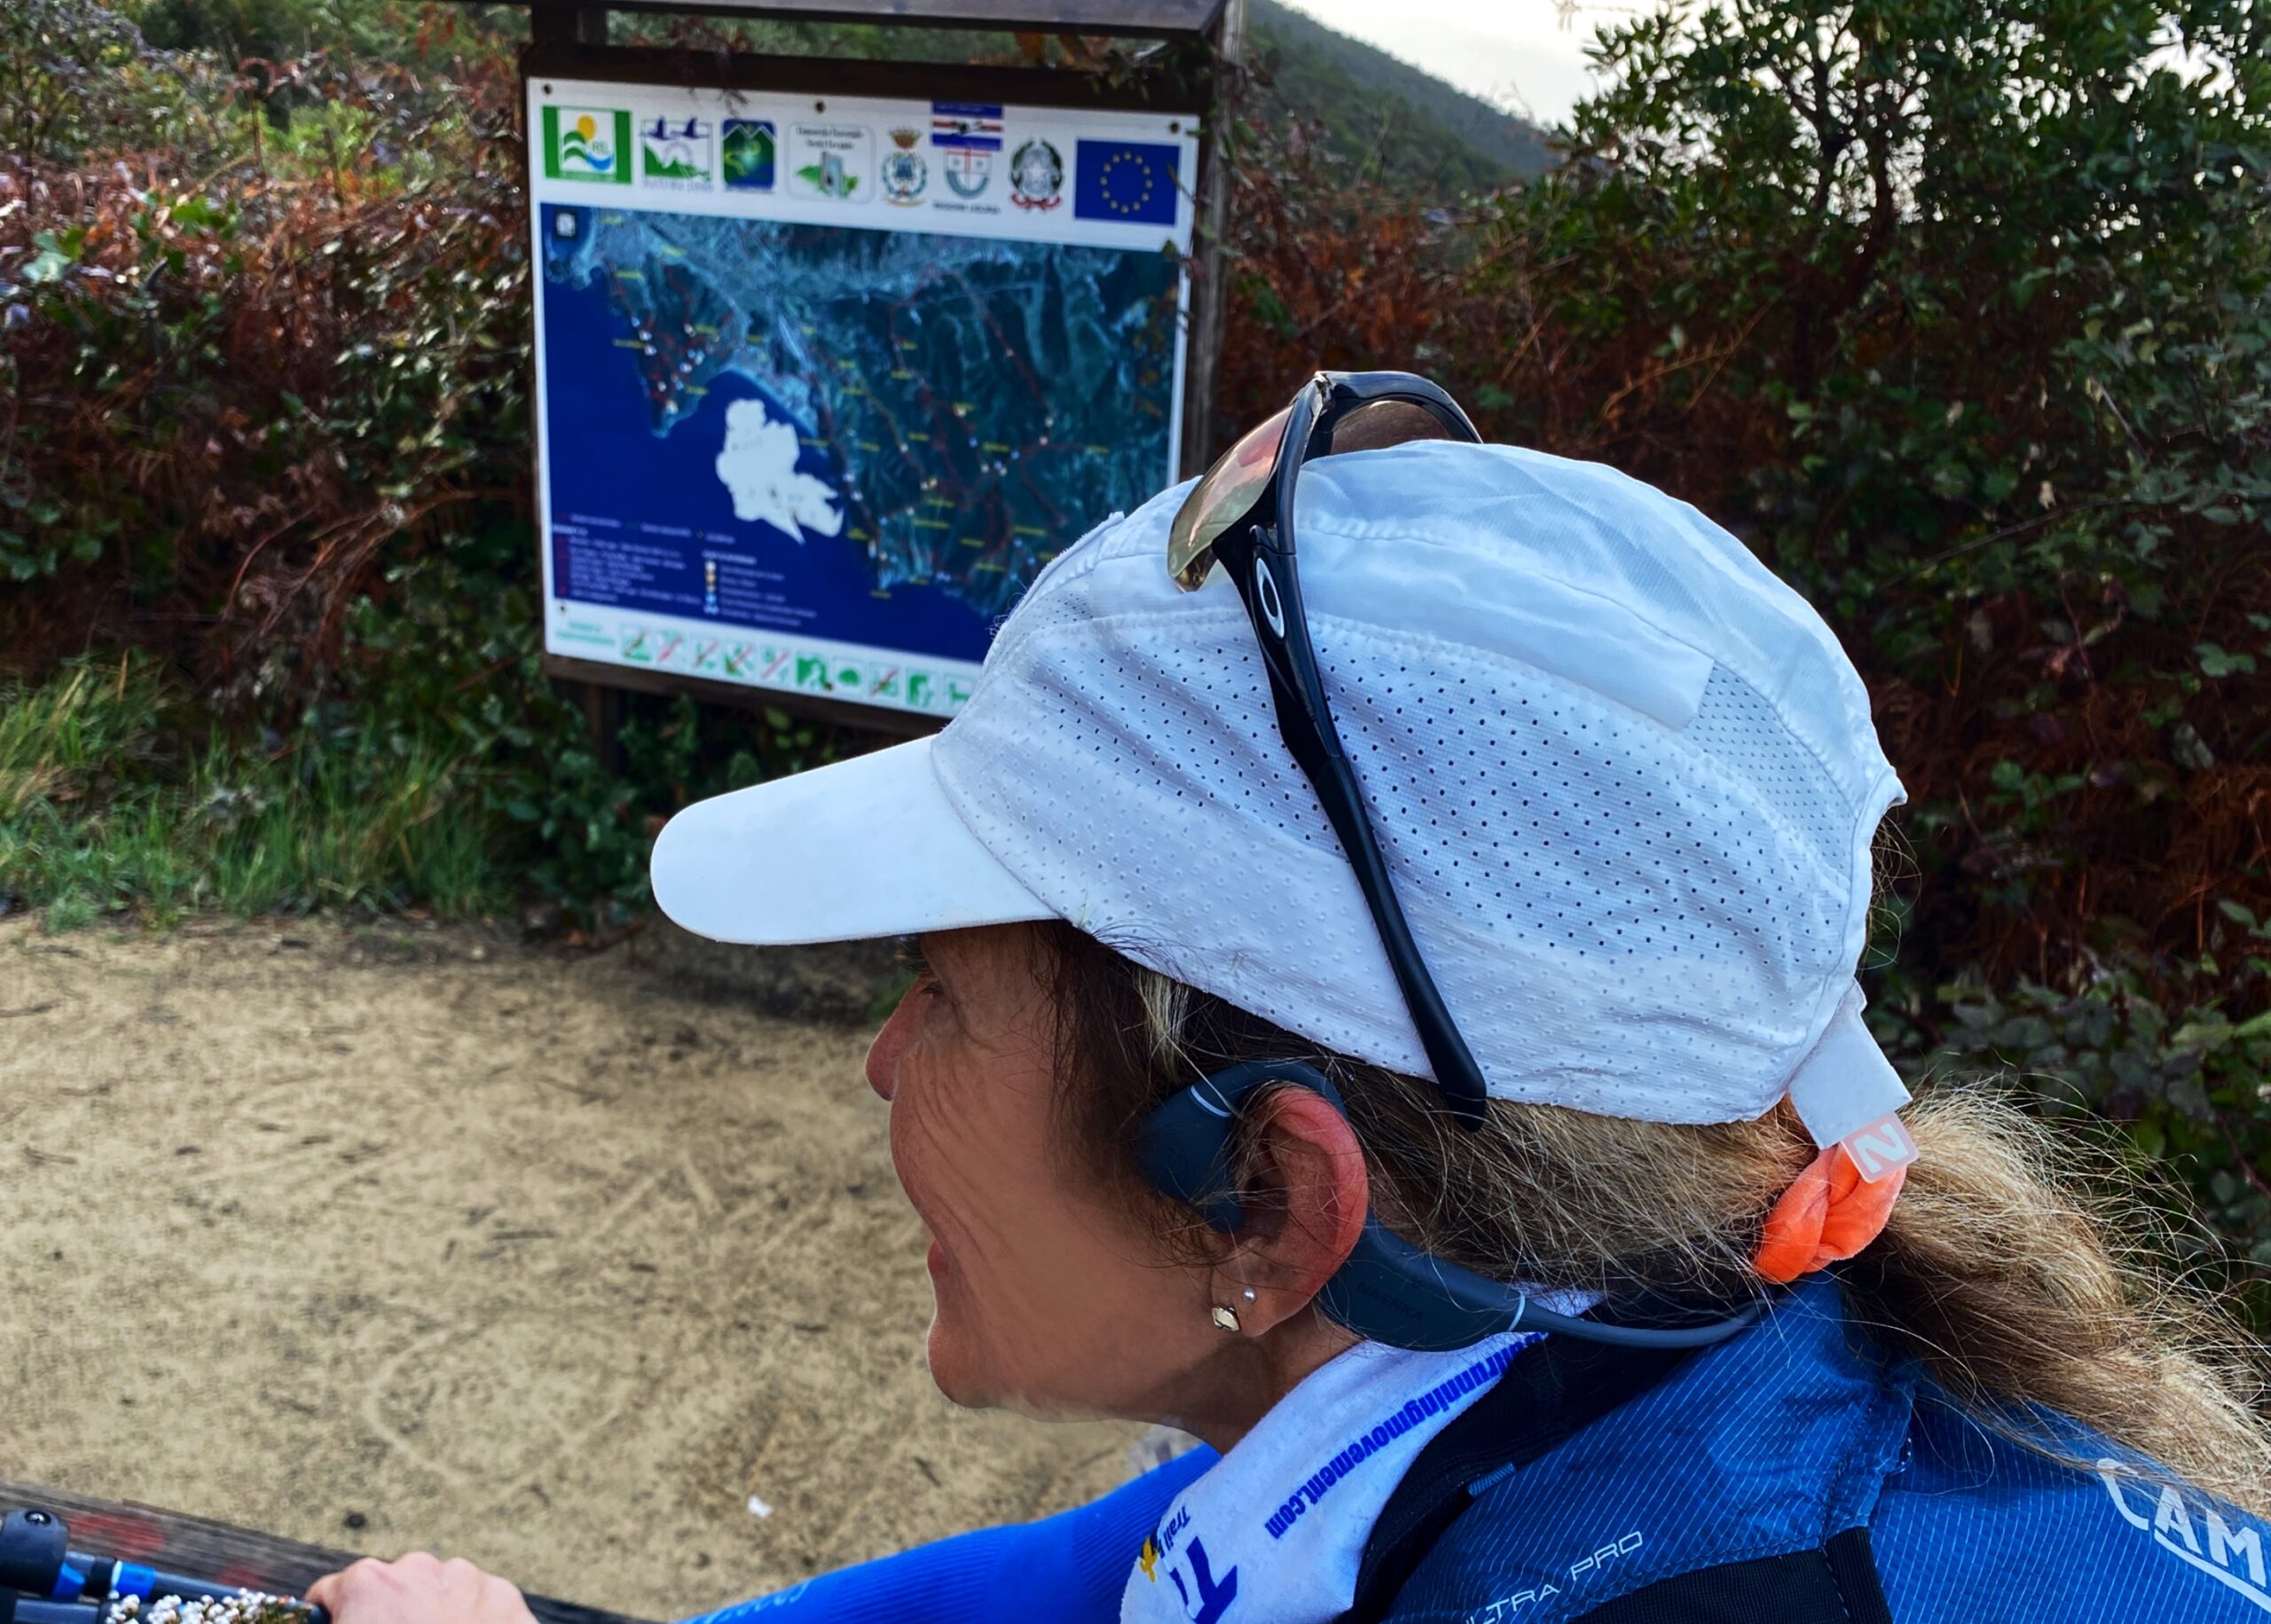 Trail Running Coach prova le cuffie Naenka nel Parco 5 terre